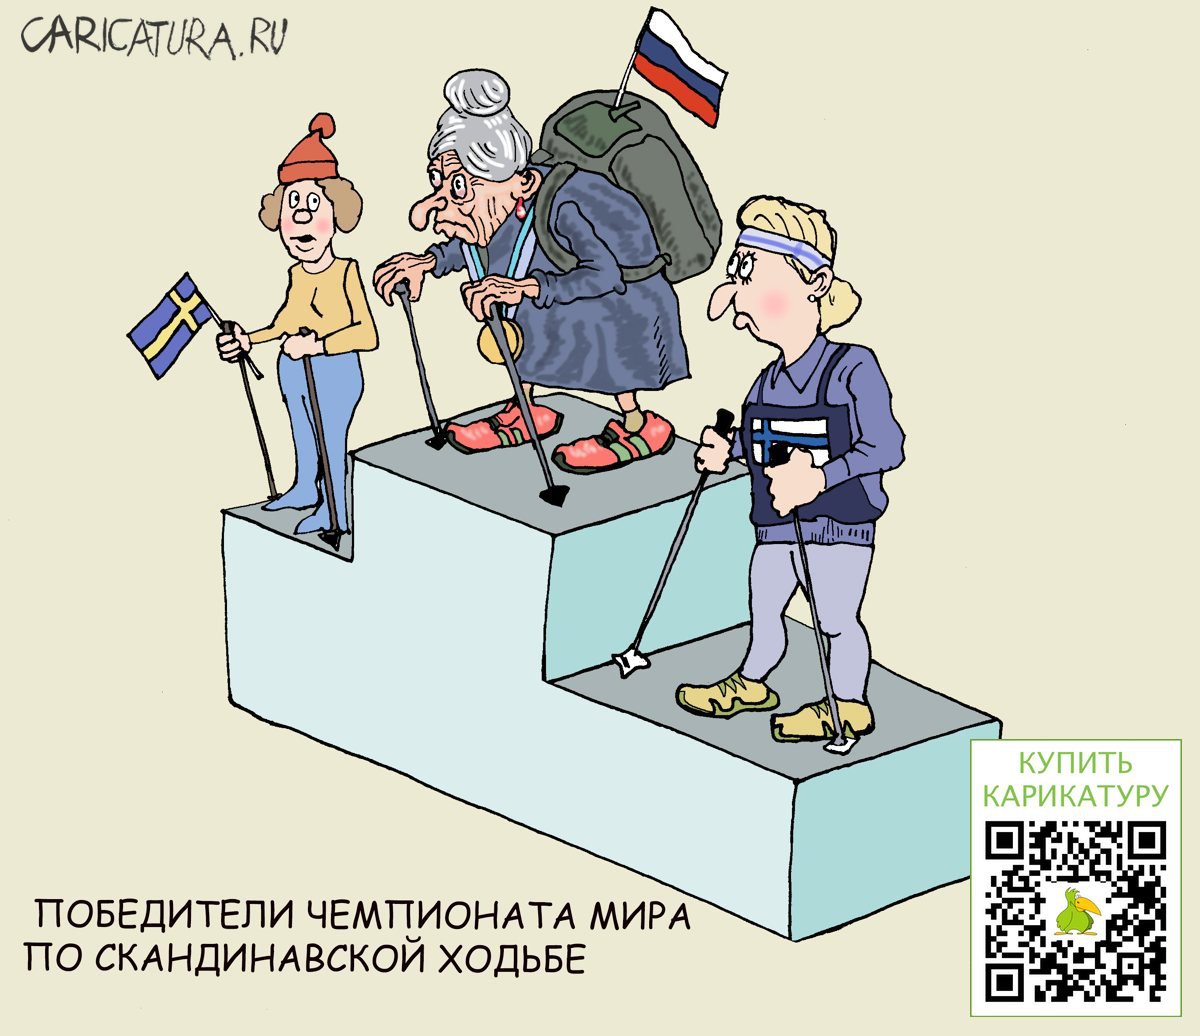 Карикатура "Впереди наши!", Булат Ирсаев